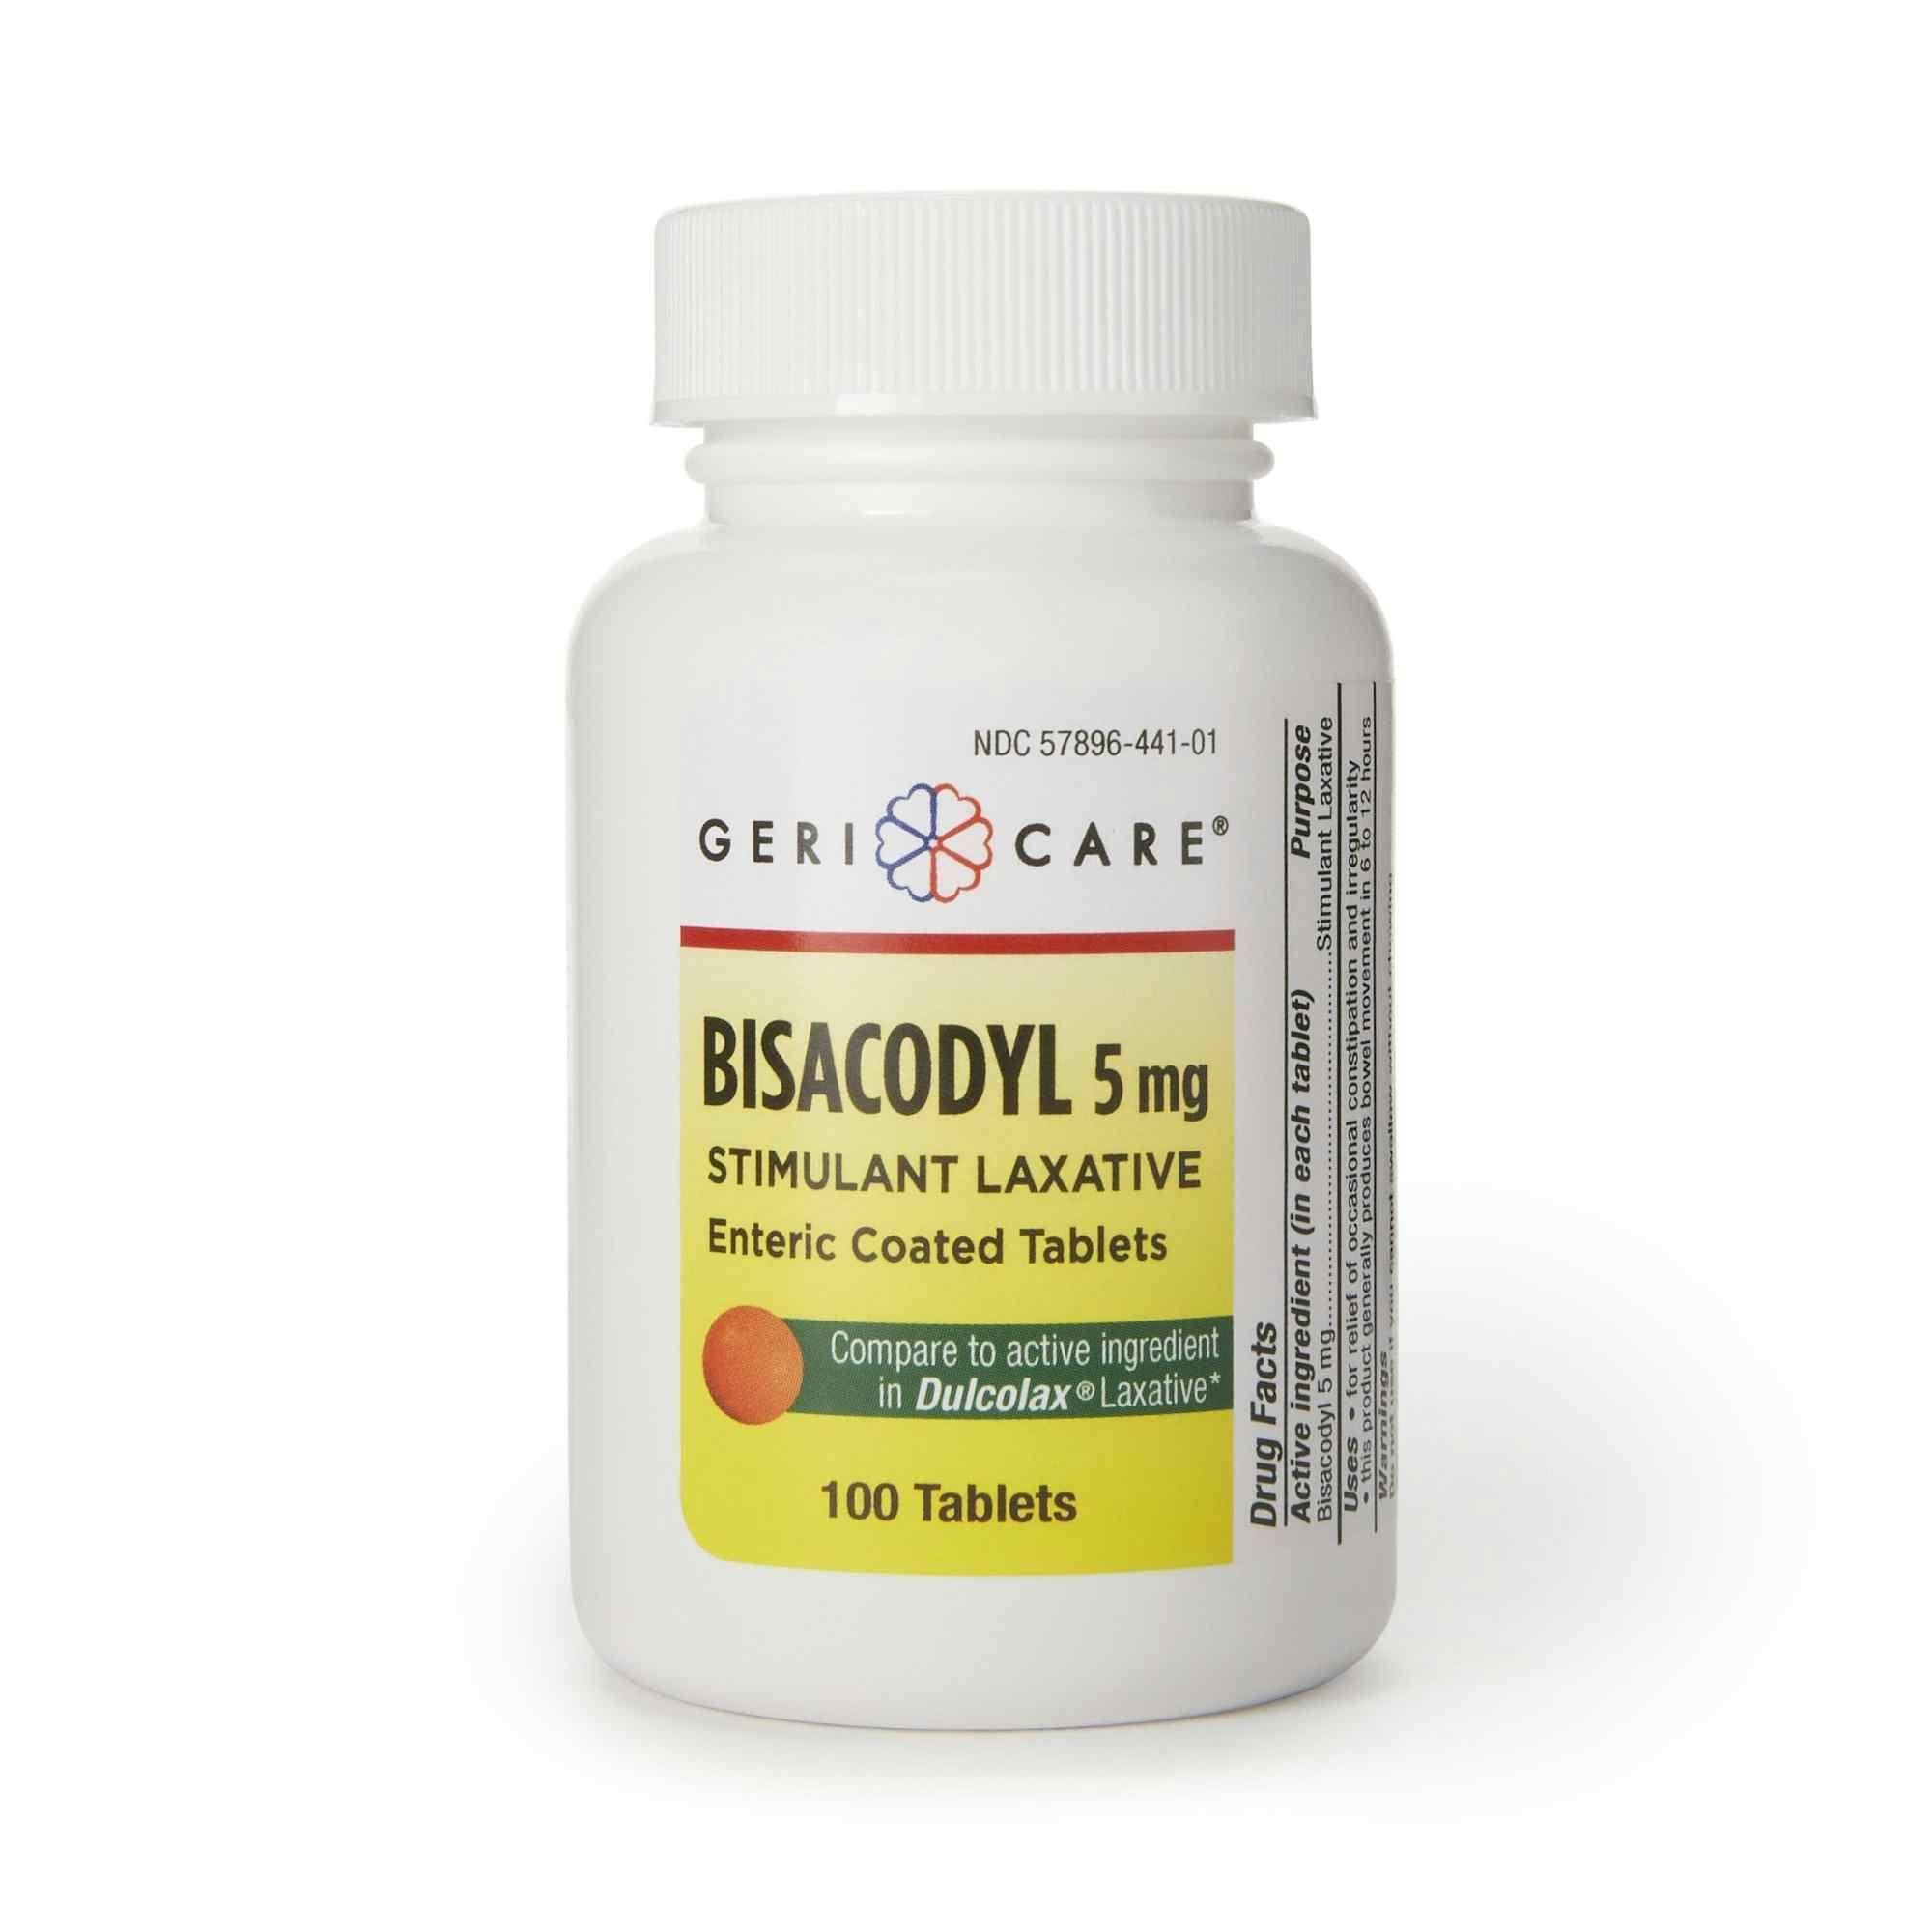 Geri-Care Bisacodyl Stimulant Laxative